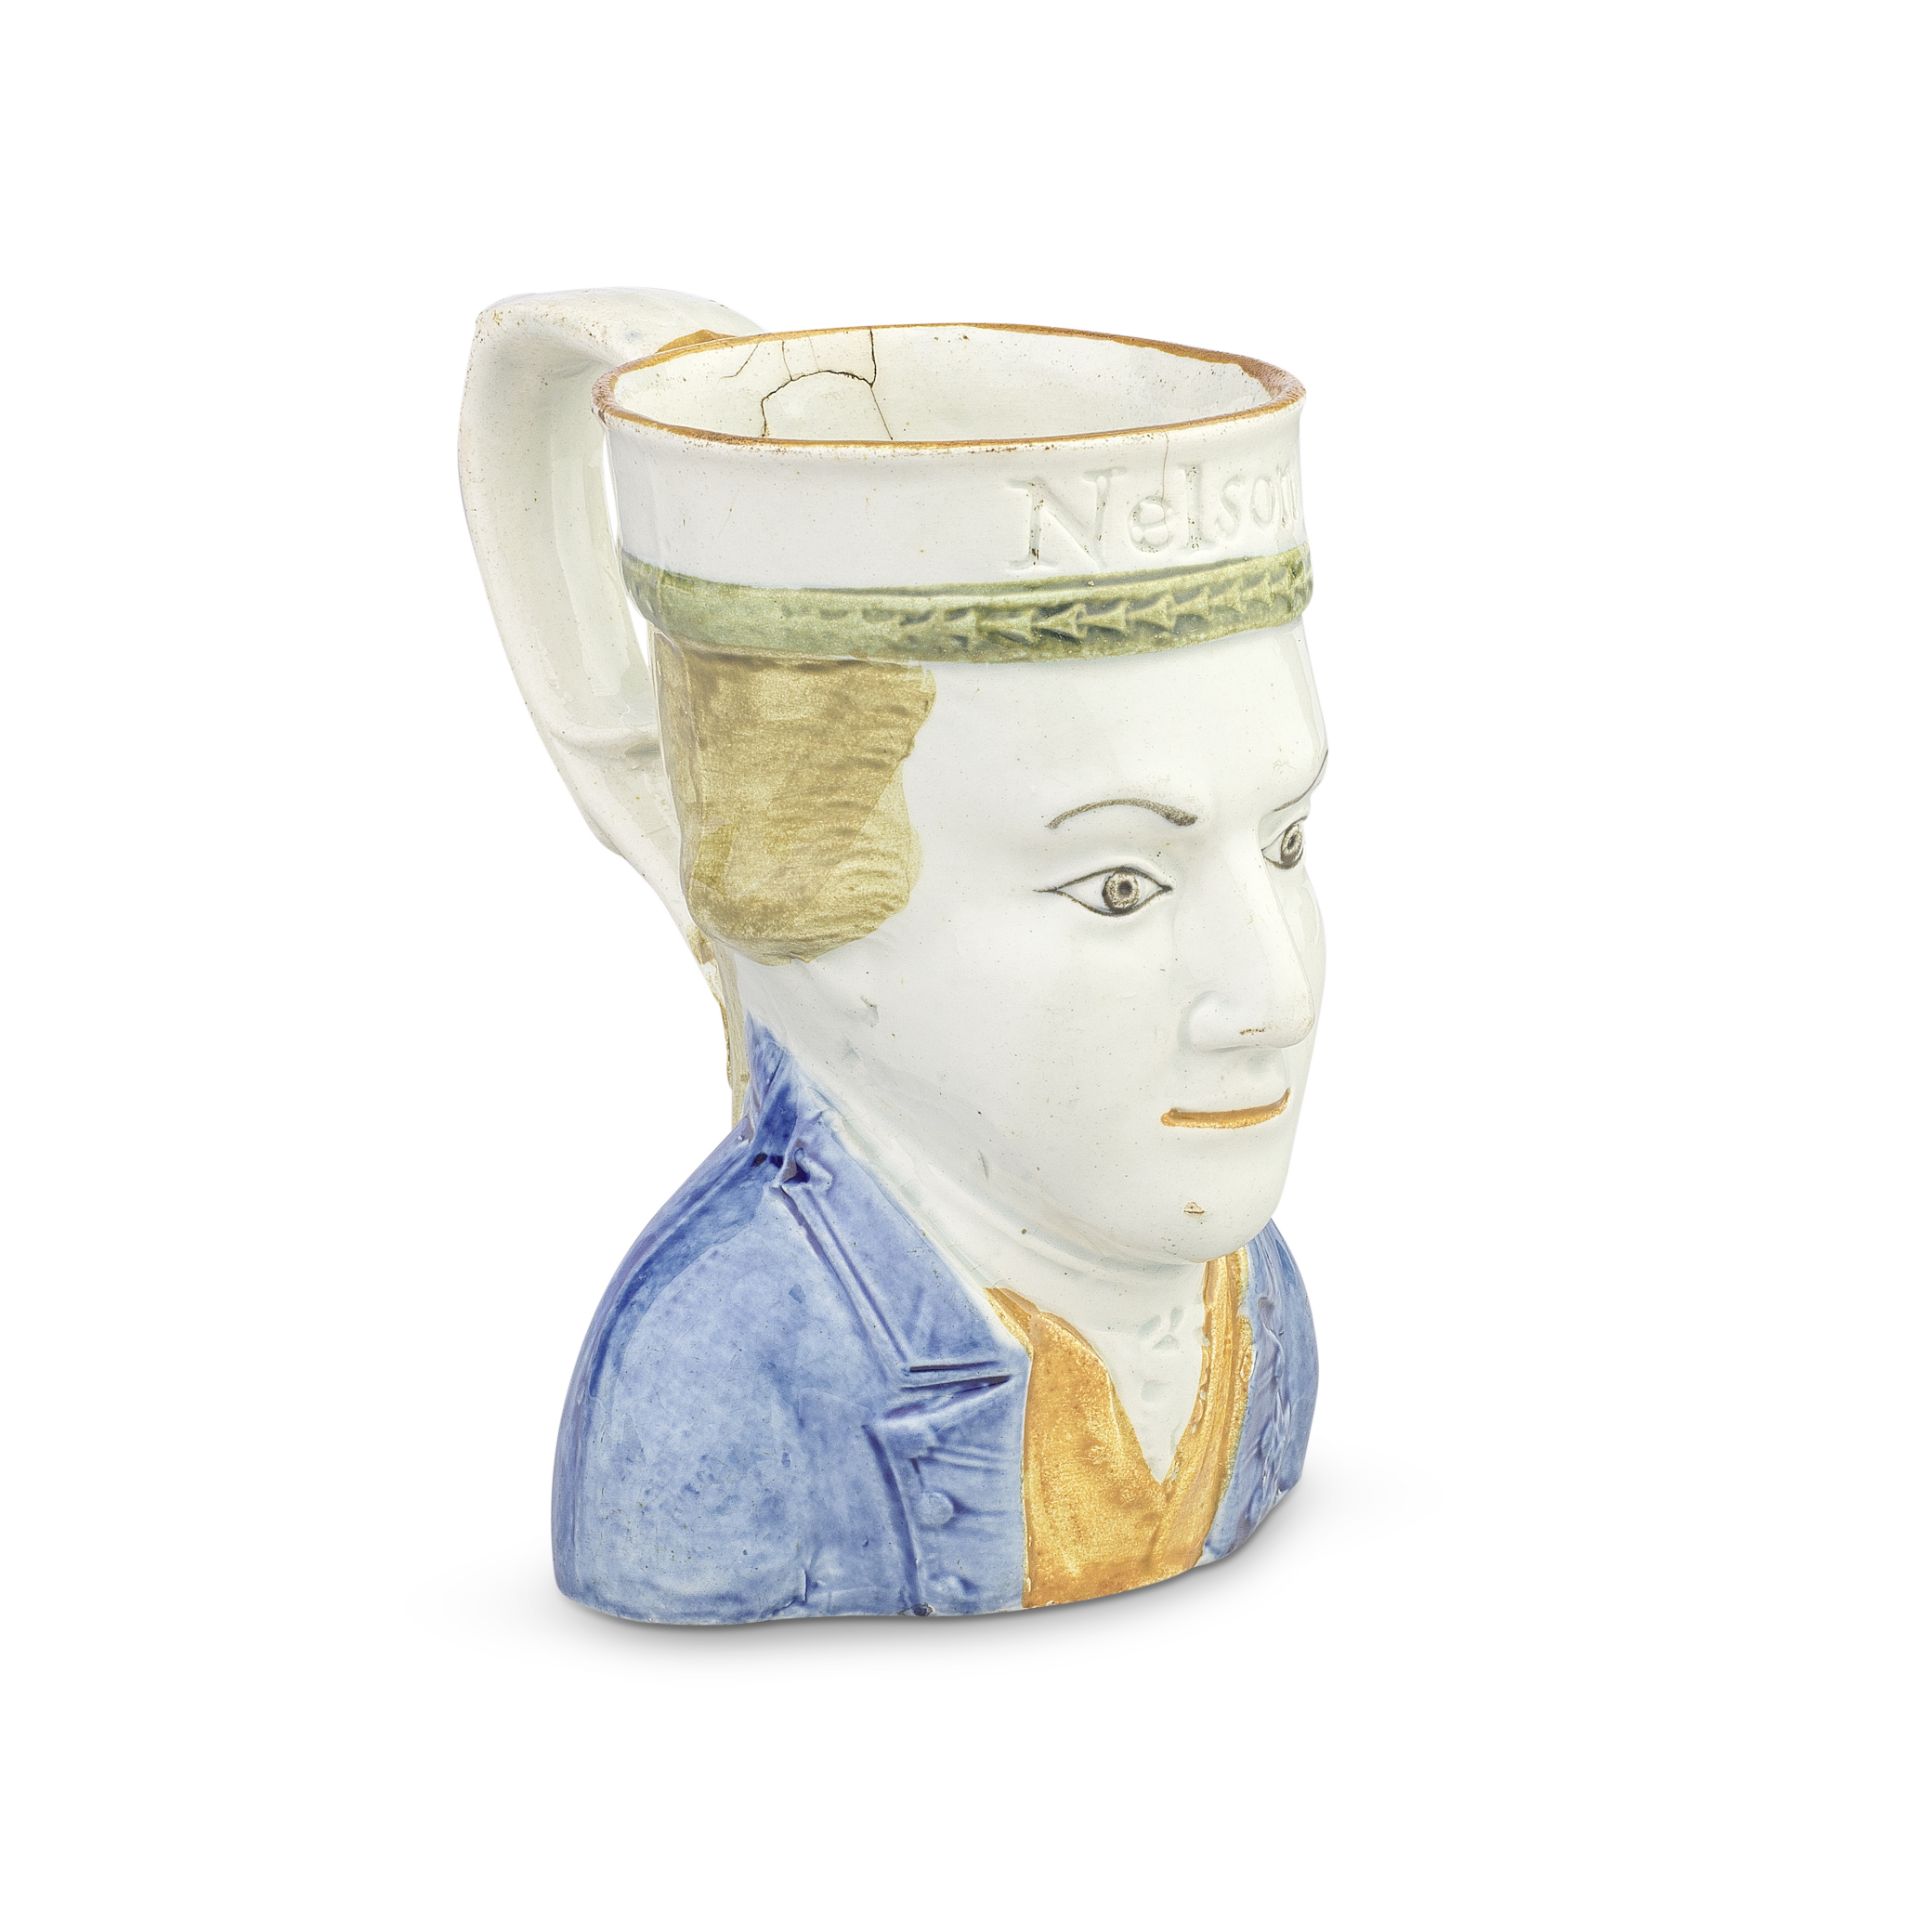 A Prattware Nelson mug, circa 1800